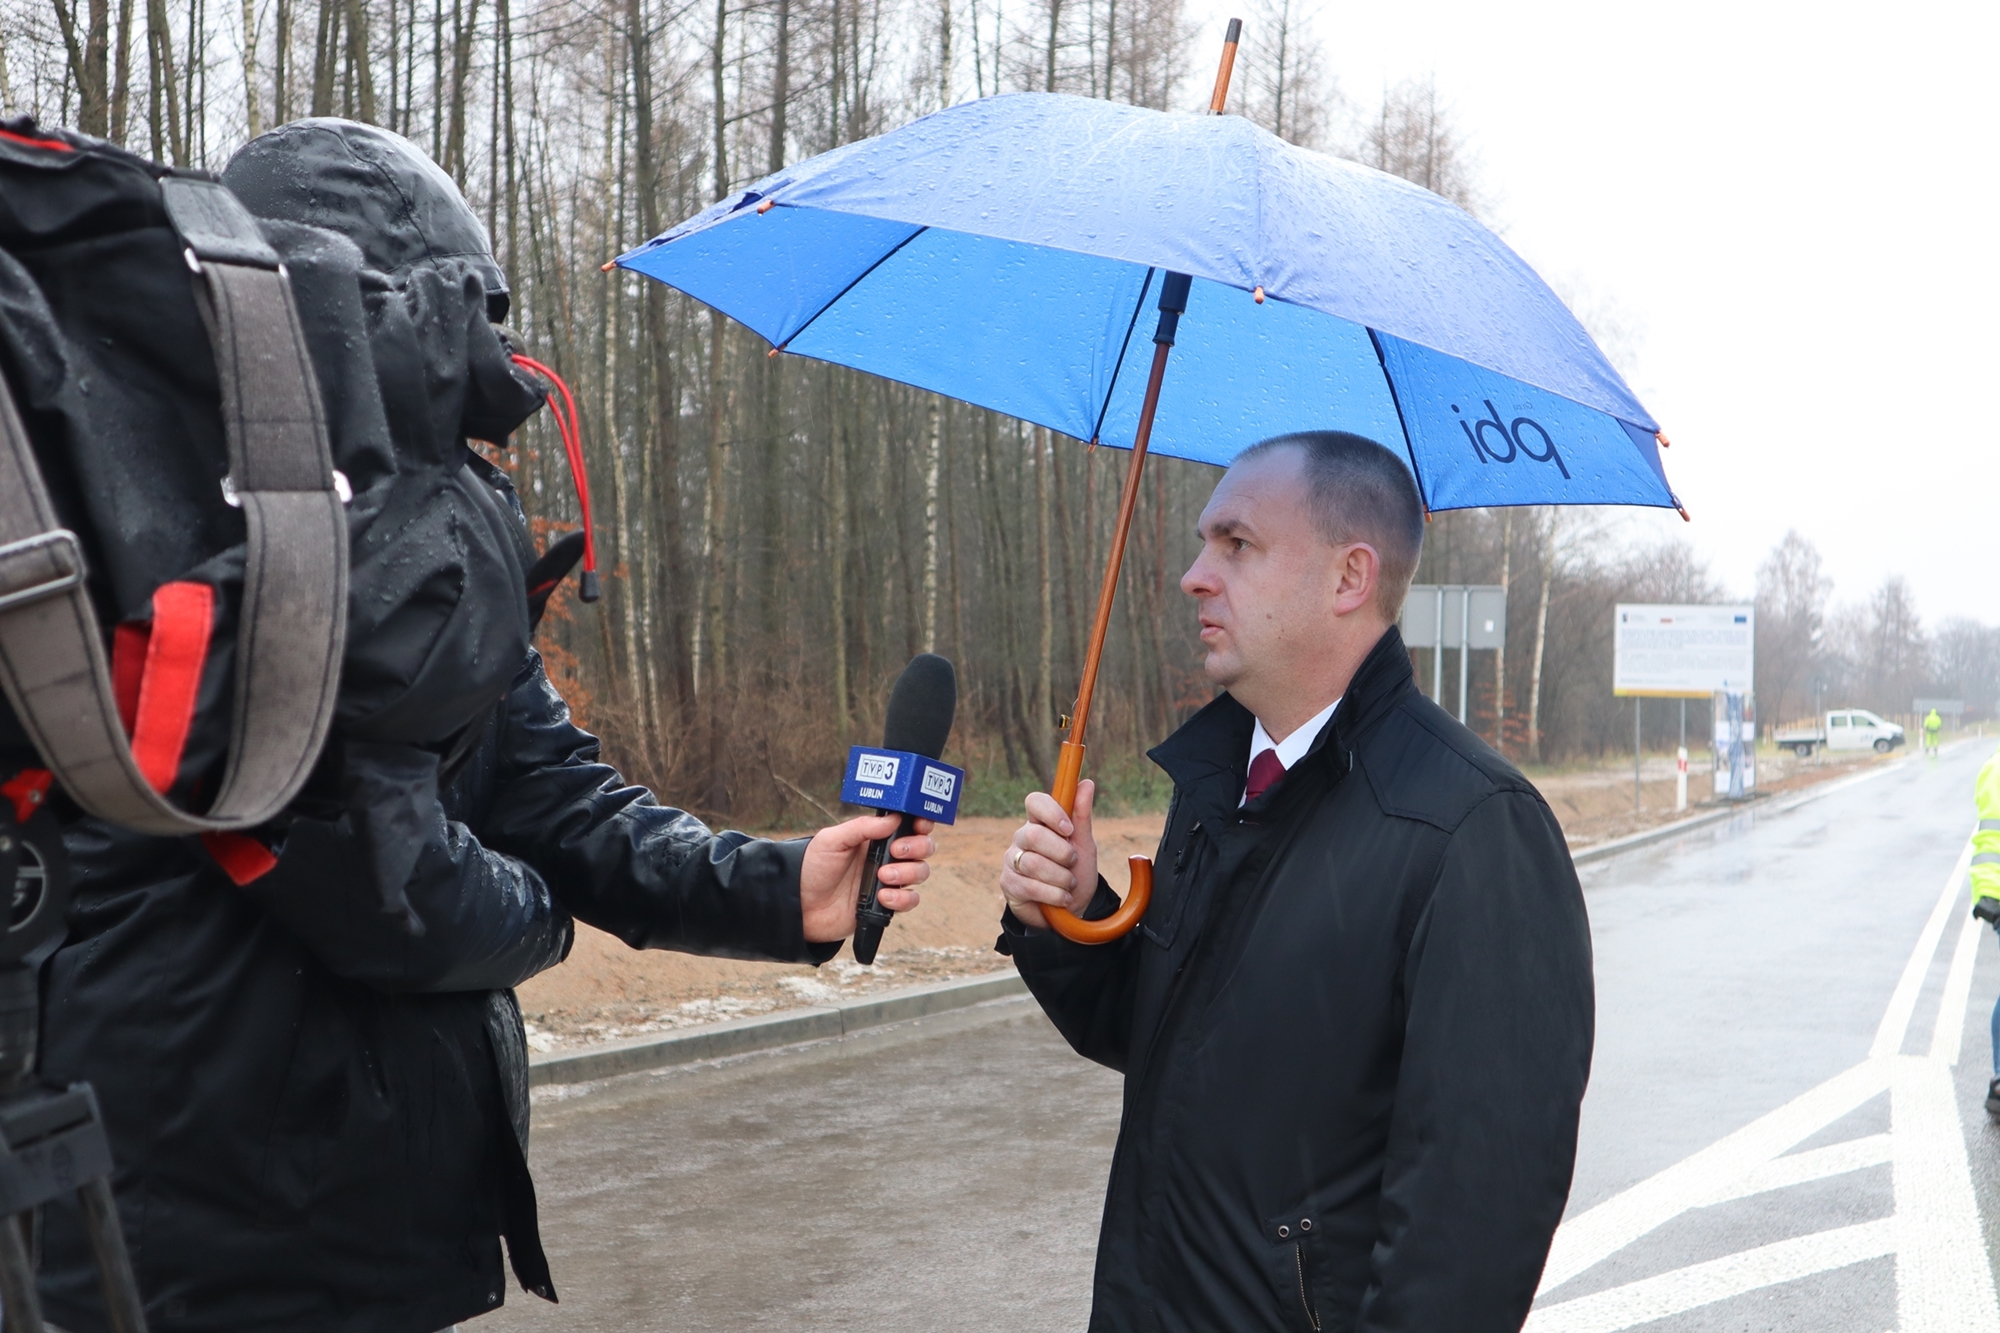 Na zdjęciu widzimy dyrektora Zarządu Dróg Wojewódzkich w Lublinie Pawła Szumerę, który trzymając w ręku parasolkę, udziela wywiadu Telewizji Lublin